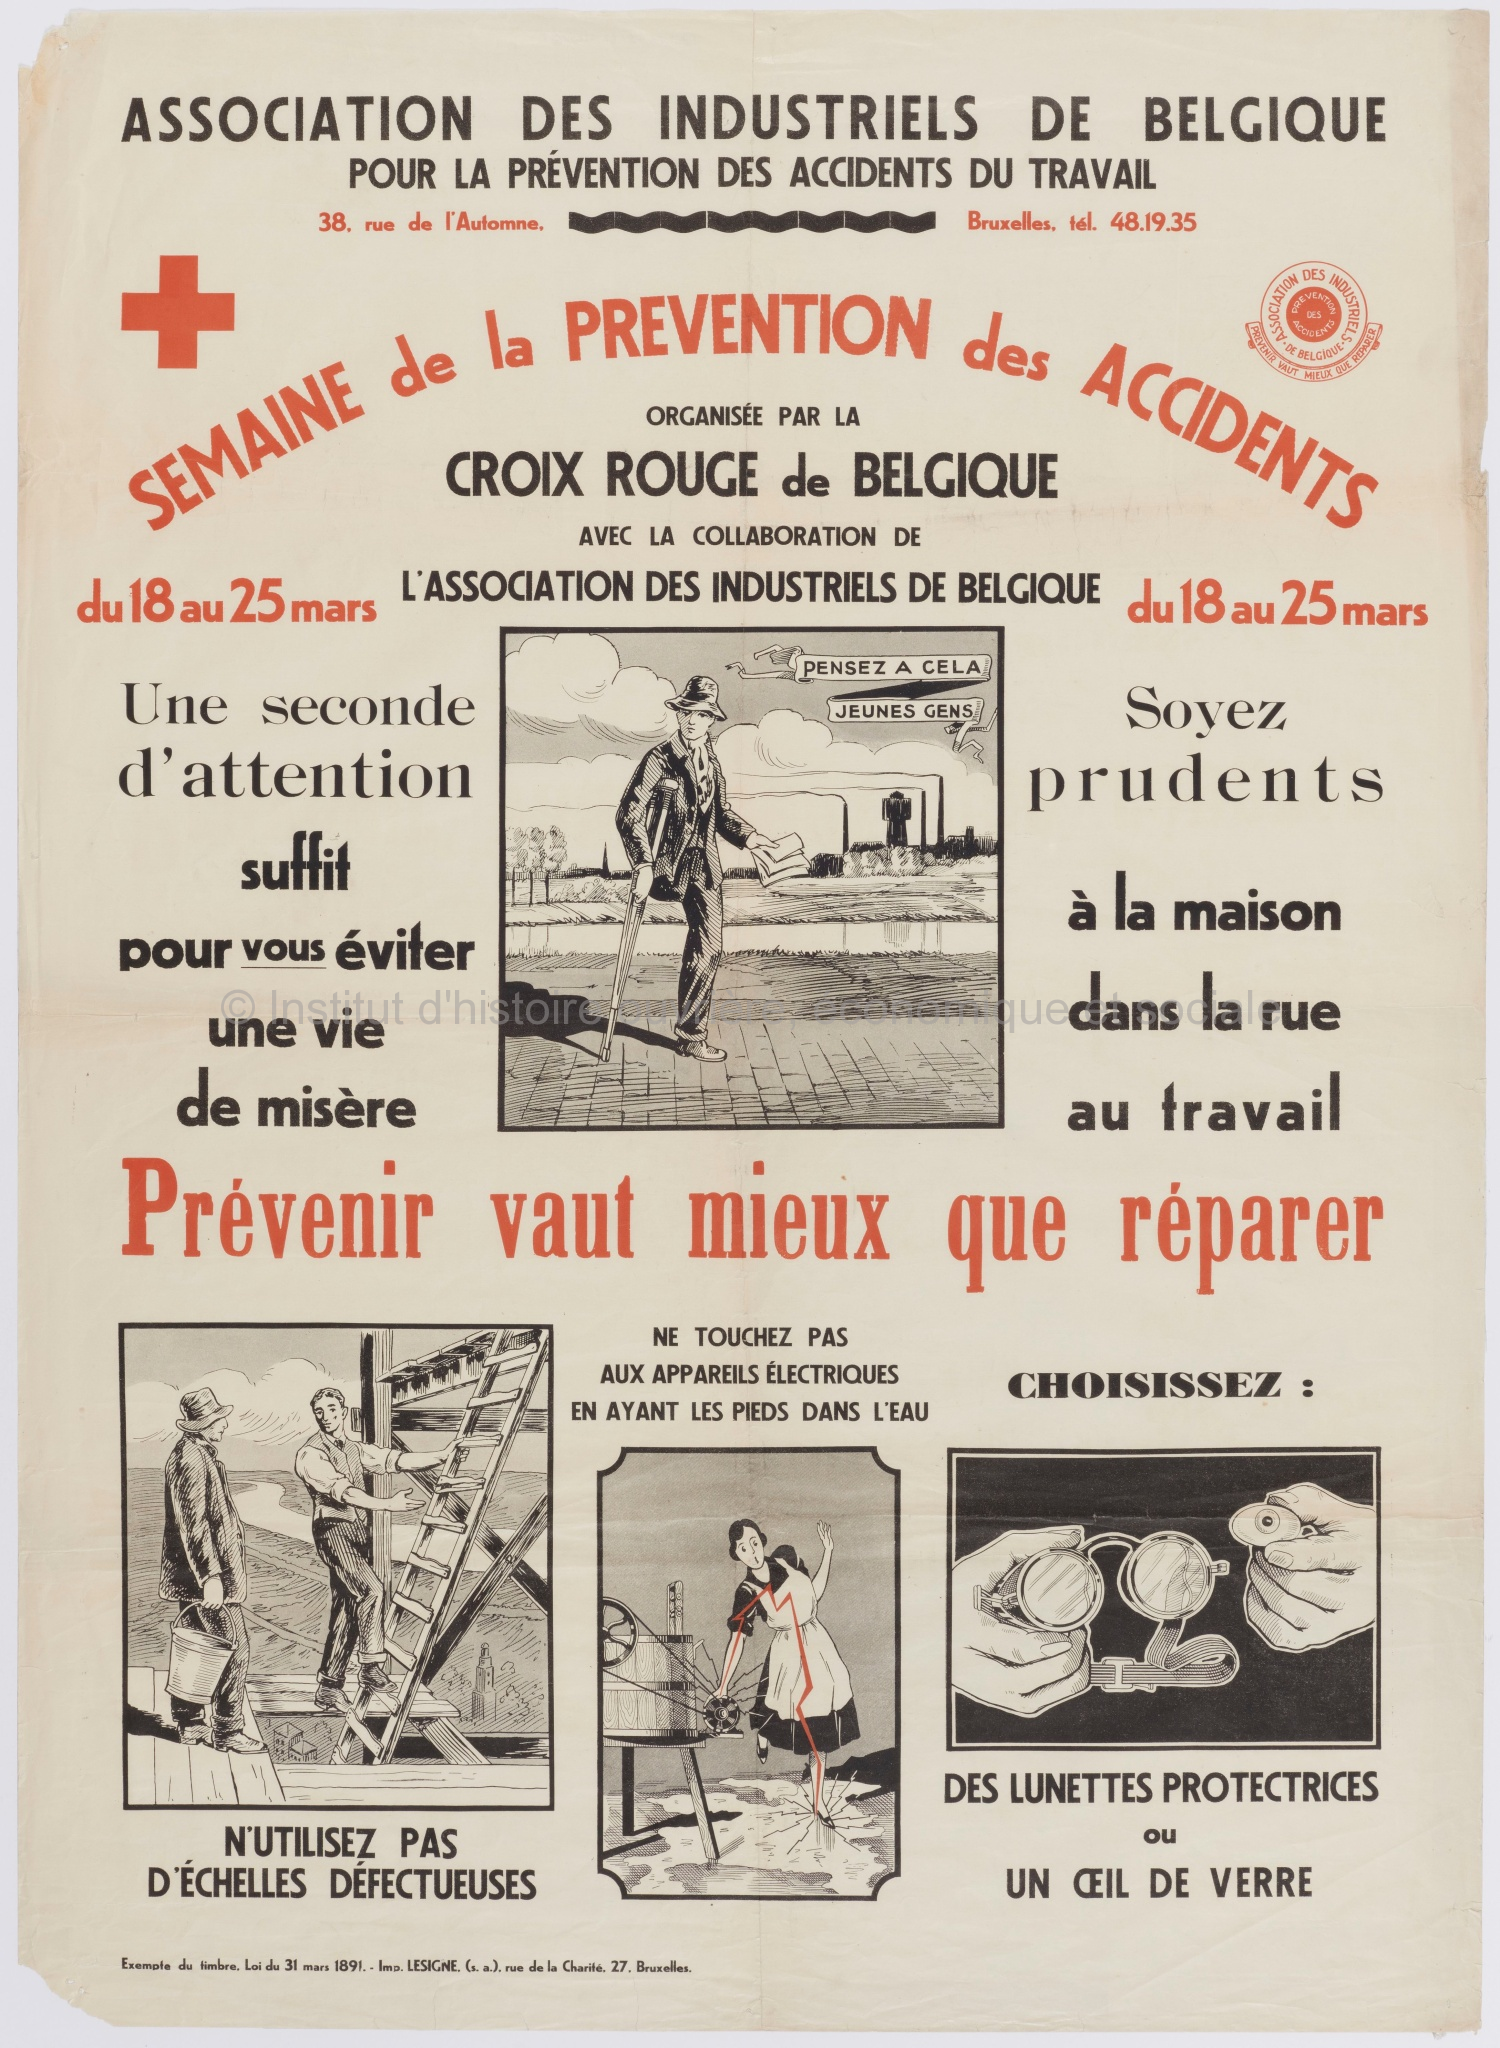 Semaine de la prévention des accidents : organisée par la Croix Rouge de Belgique avec la collaboration de l'Association des industries de Belgique du 18 au 25 mars